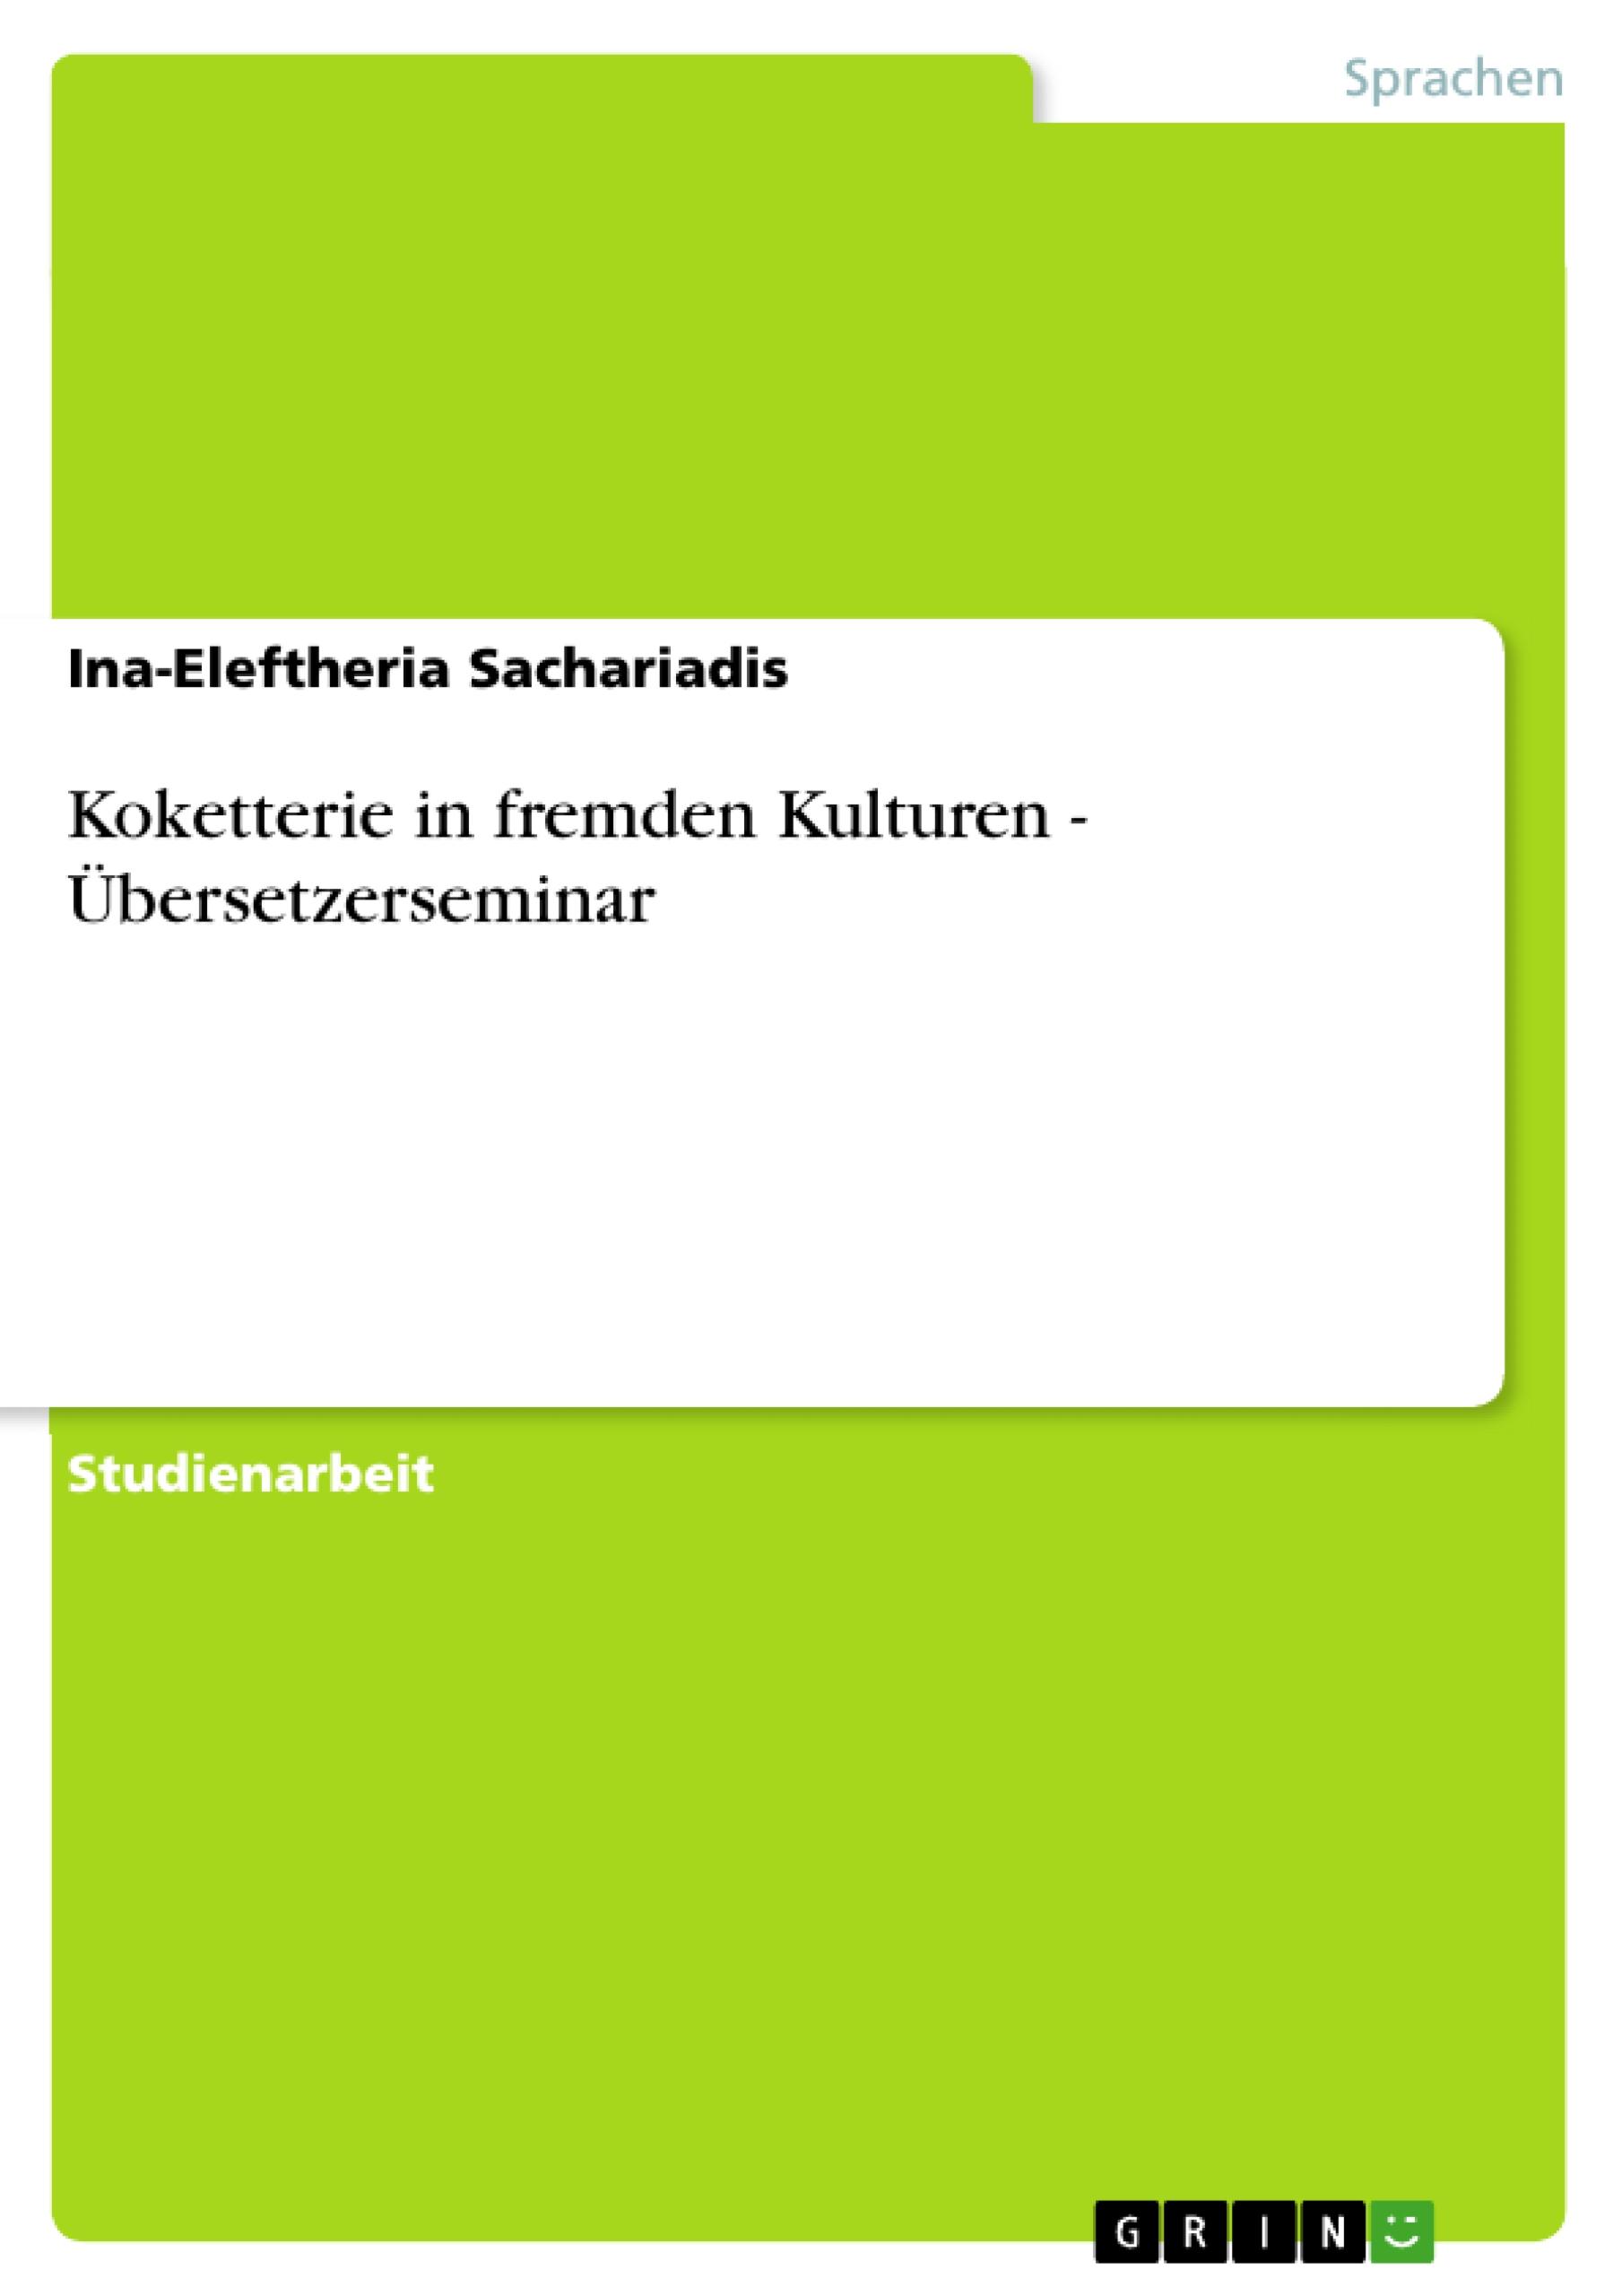 Koketterie in fremden Kulturen - Übersetzerseminar  Ina-Eleftheria Sachariadis  Taschenbuch  Paperback  Deutsch  2011 - Sachariadis, Ina-Eleftheria